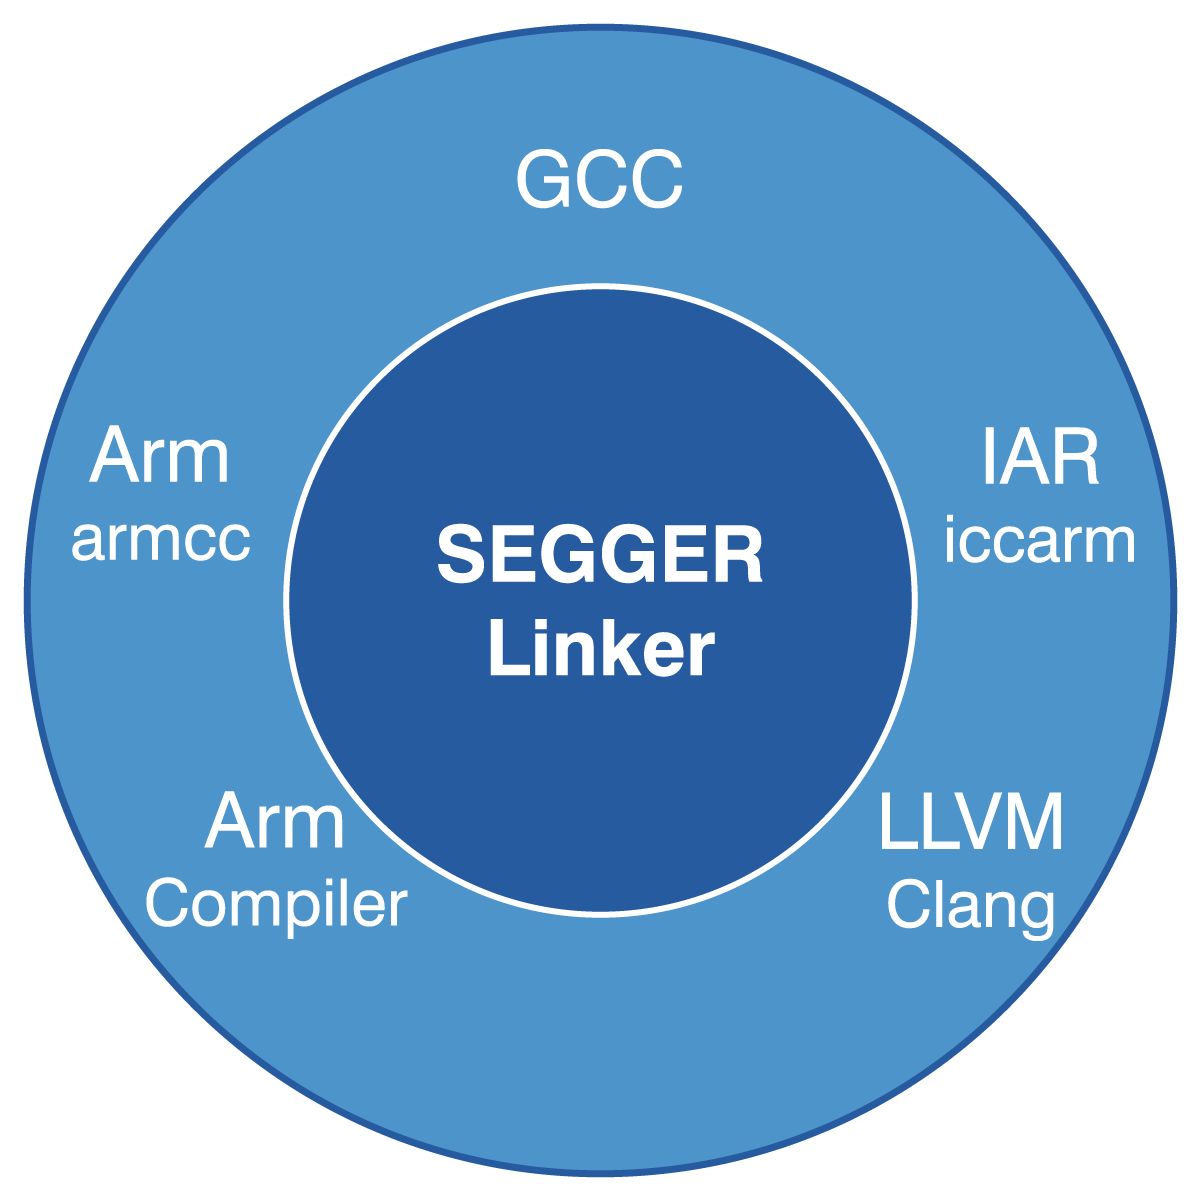 segger embedded studio gcc linker script